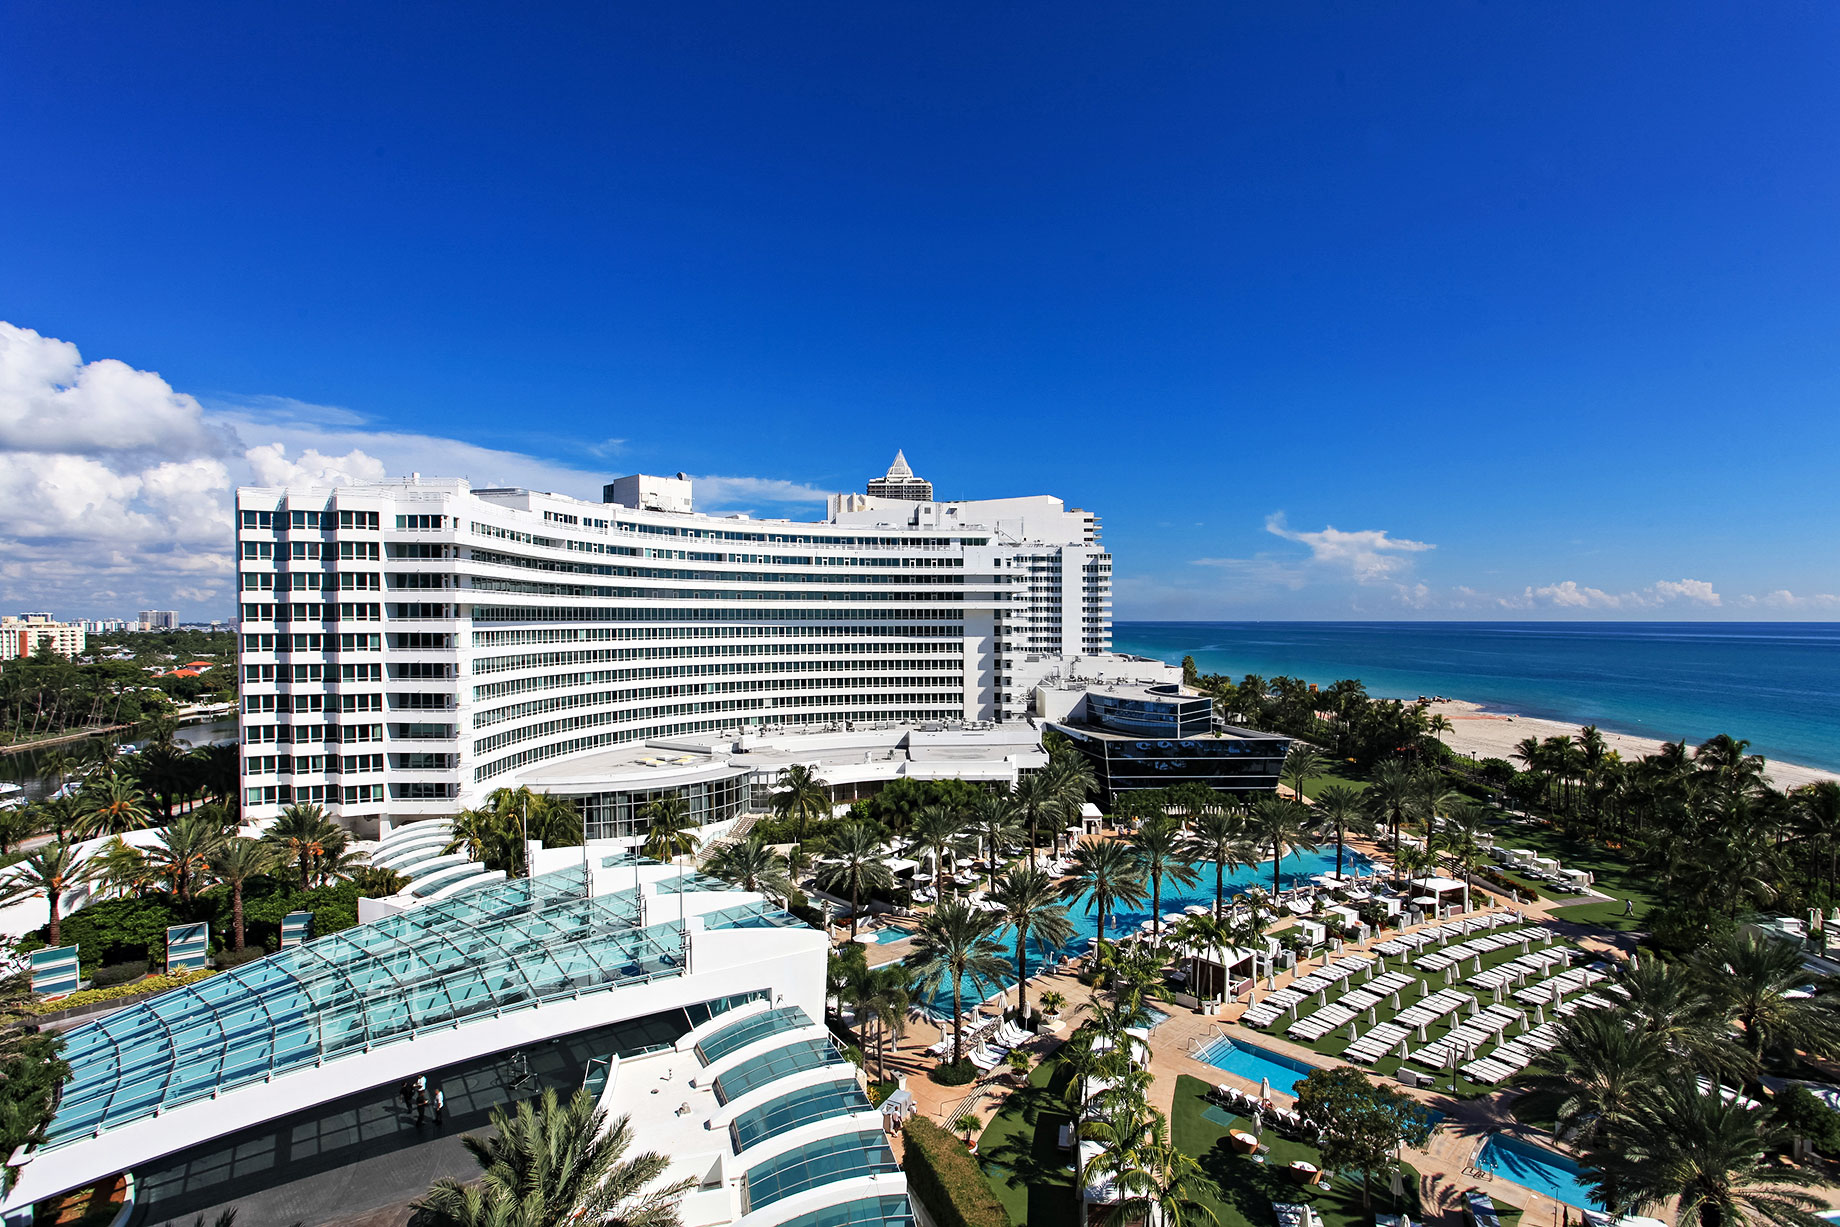 Fontainebleau Hotel - Miami Beach, Florida, USA